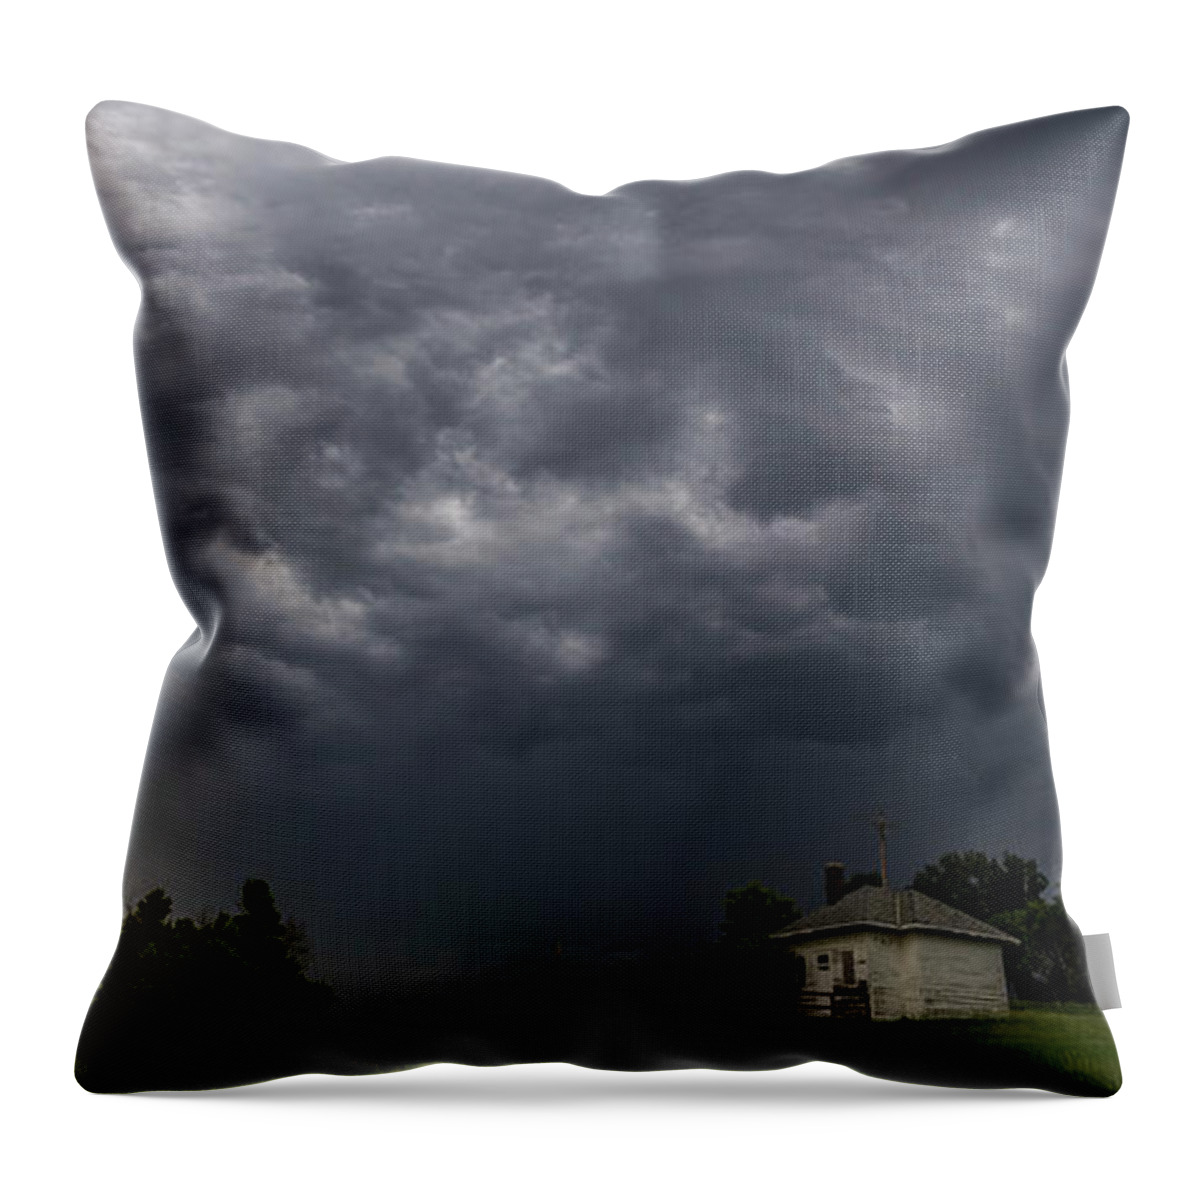 Tornado Watch Throw Pillow featuring the photograph Sky Monster by Aaron J Groen